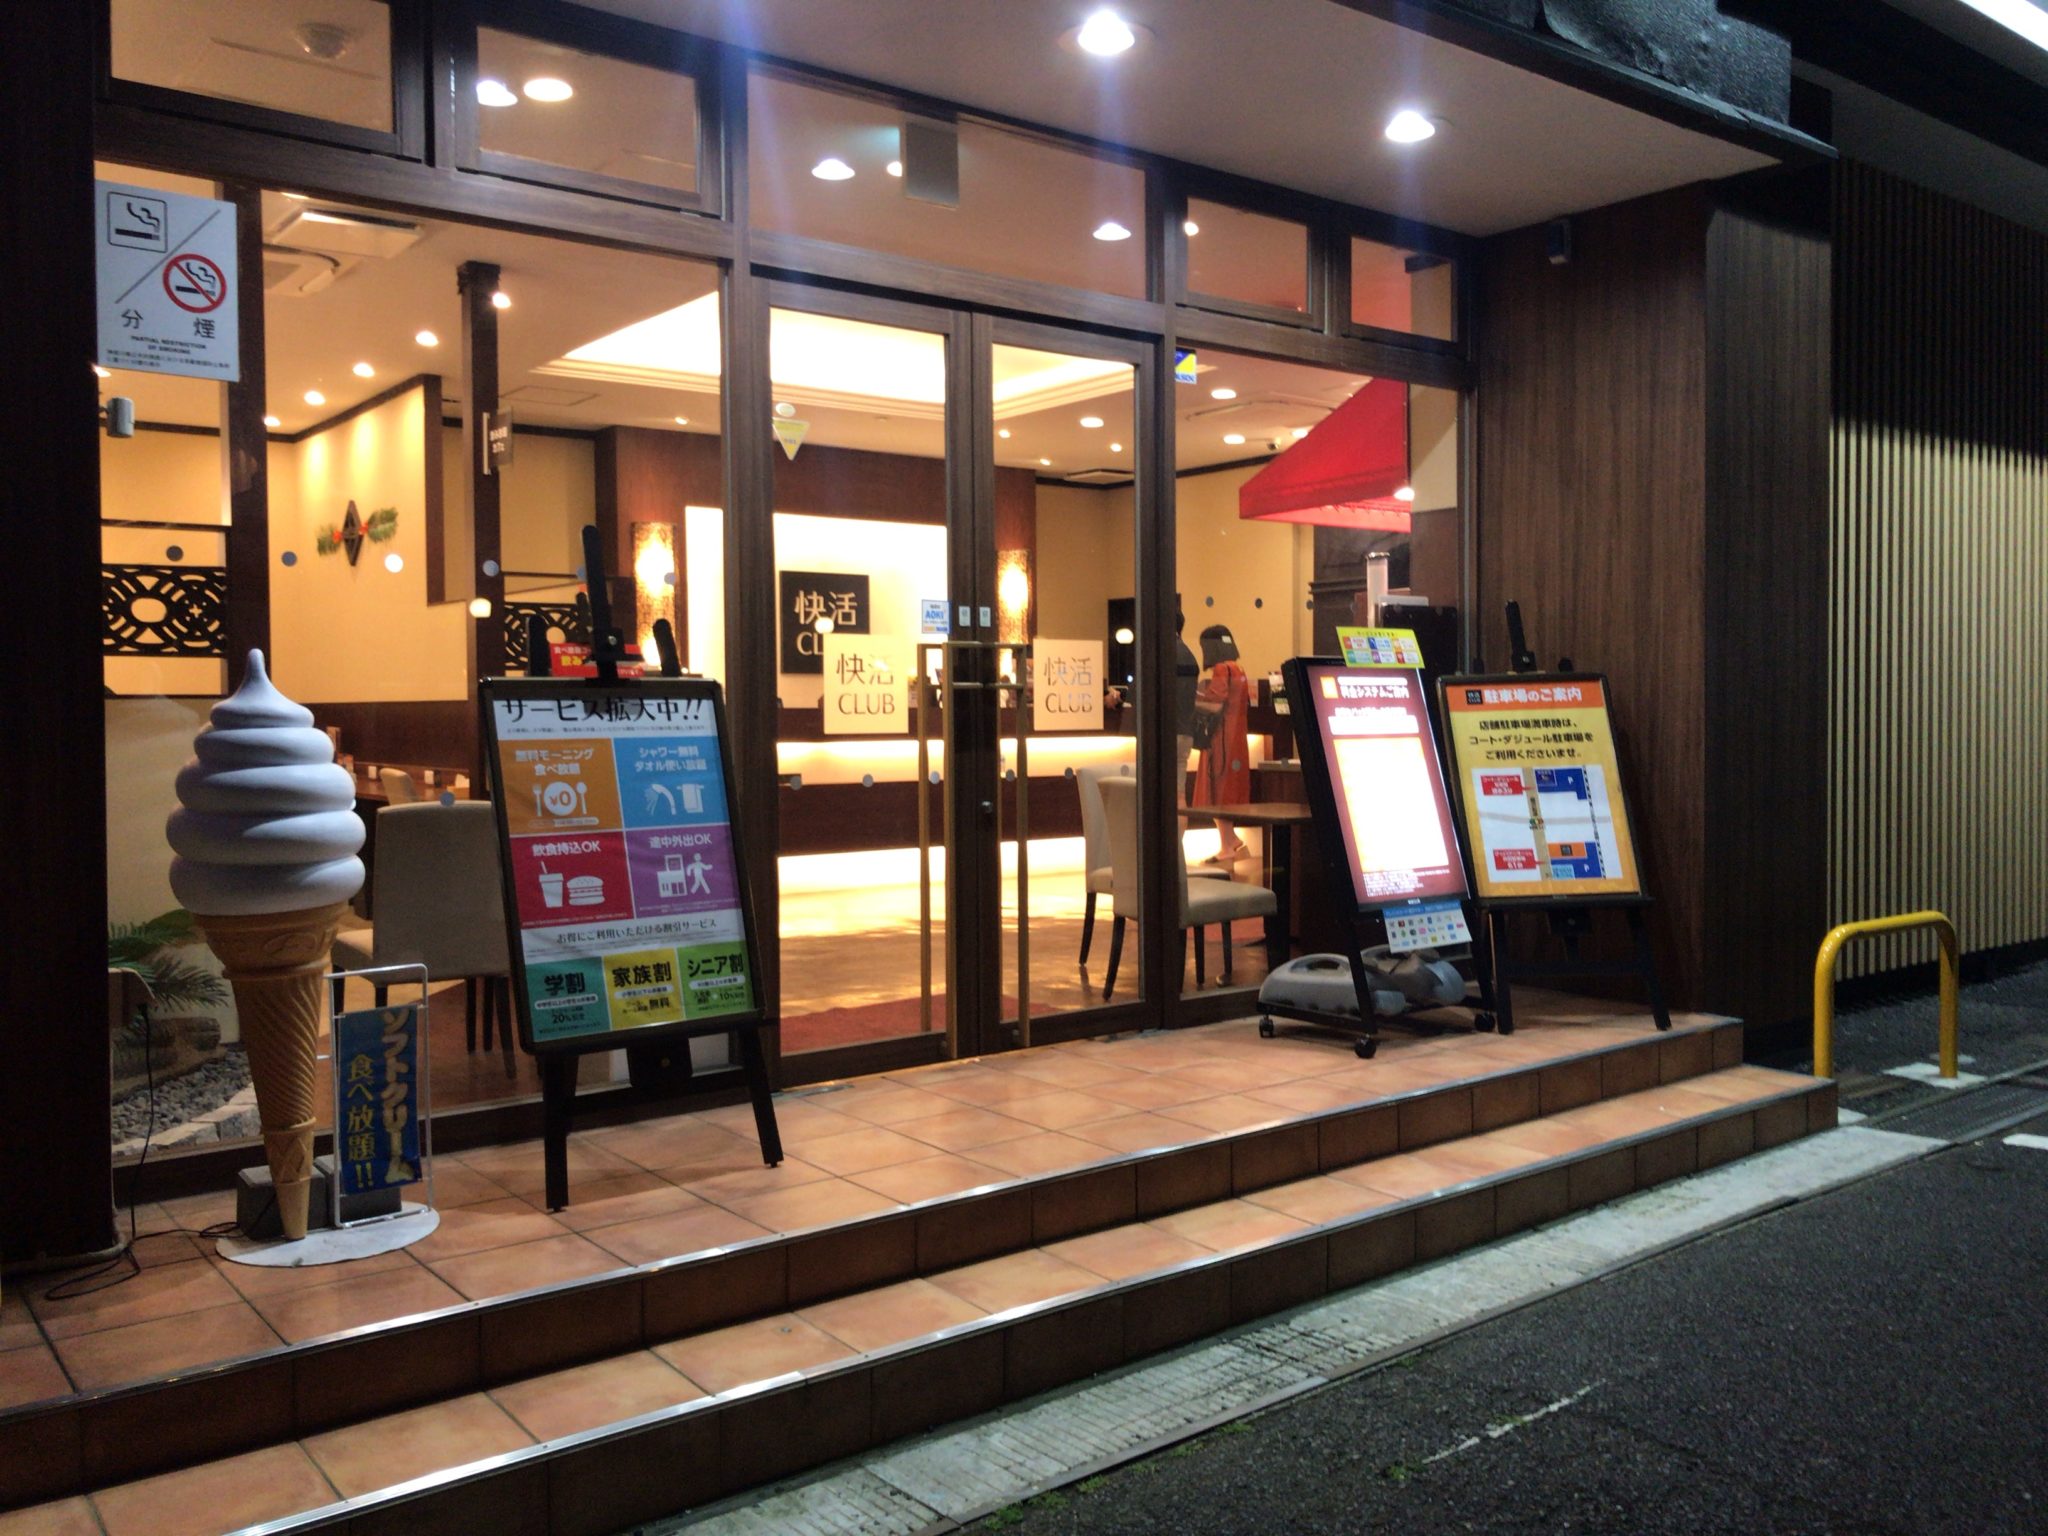 桜ヶ丘駅から徒歩9分 快活club 大和桜ヶ丘店をレポート 日本全国のネカフェ 漫画喫茶マップのヒマップ